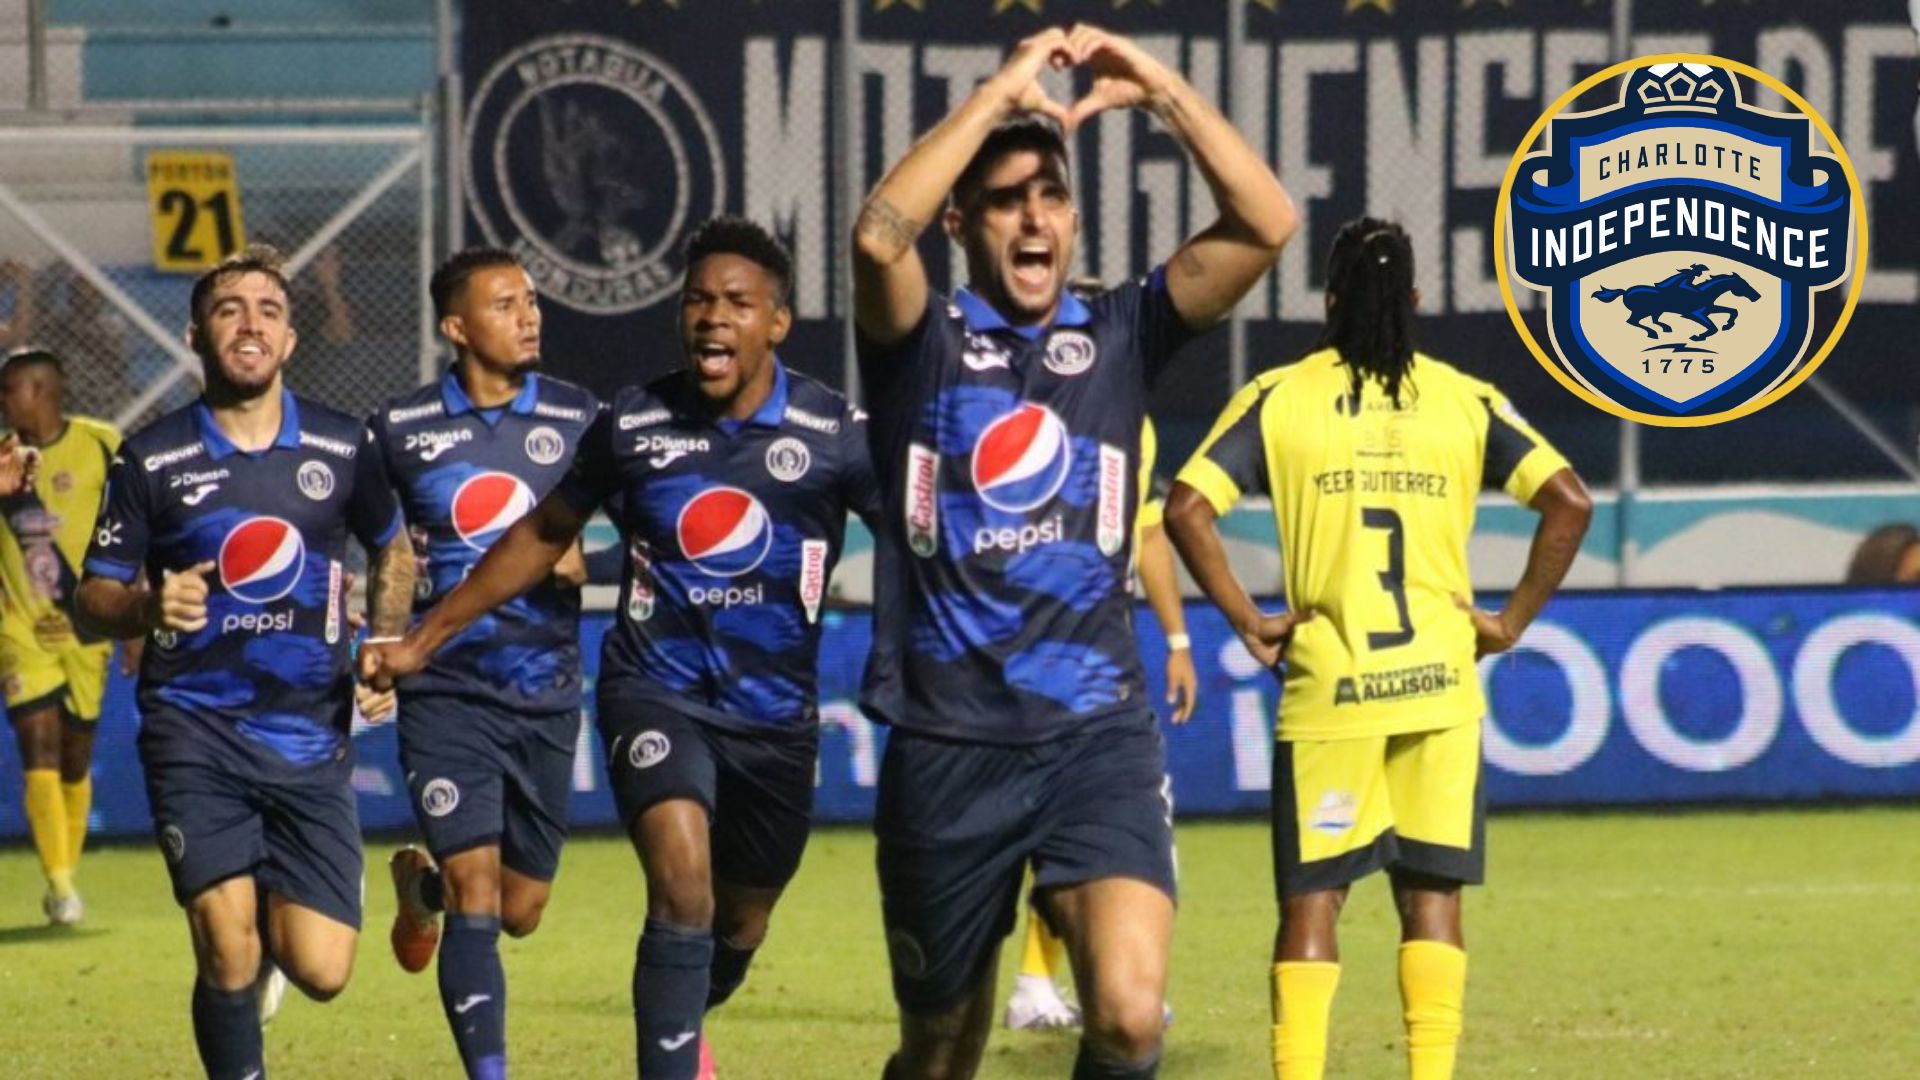 Tras su paso por el Motagua futbolista hondureño decide pasar la página y marcharse al equipo estadounidense Charlotte Independence, generado opiniones.